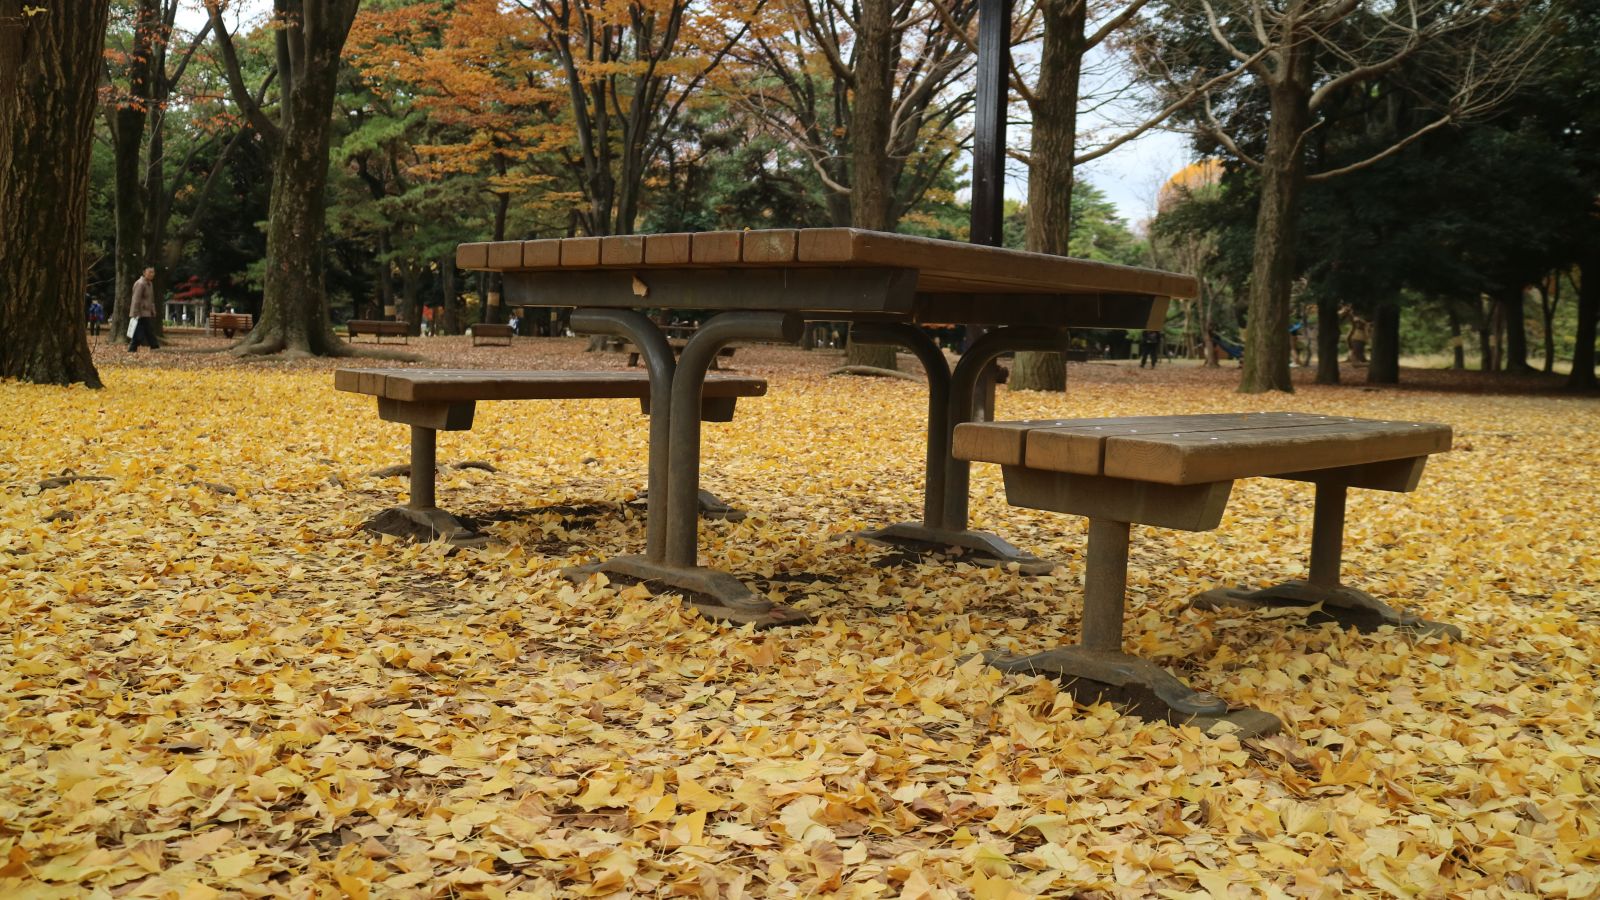 Thảm lá rẻ quạt vàng rực ở công viên Yoyogi.